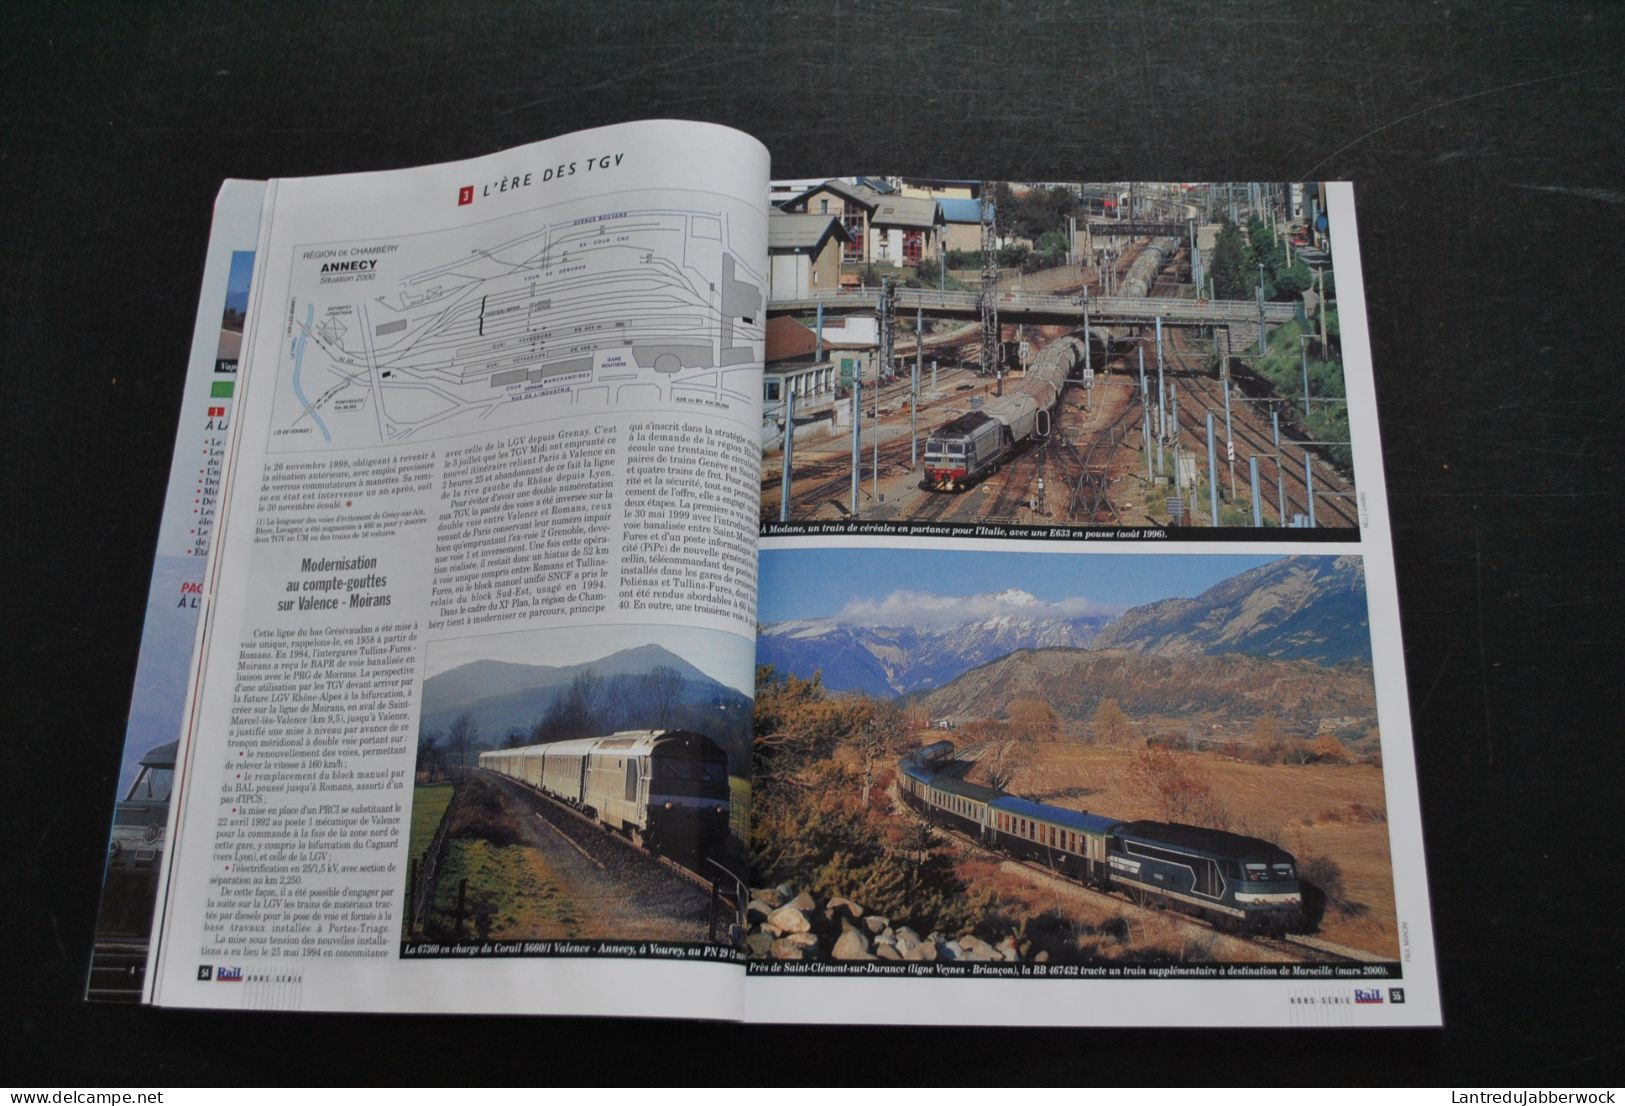 Revue Rail Passion HS 2000 Alpes La Prodigieuse épopée Du Rail TGV Rhône Modane Maurienne Grenoble Culoz Ligne - Chemin De Fer & Tramway